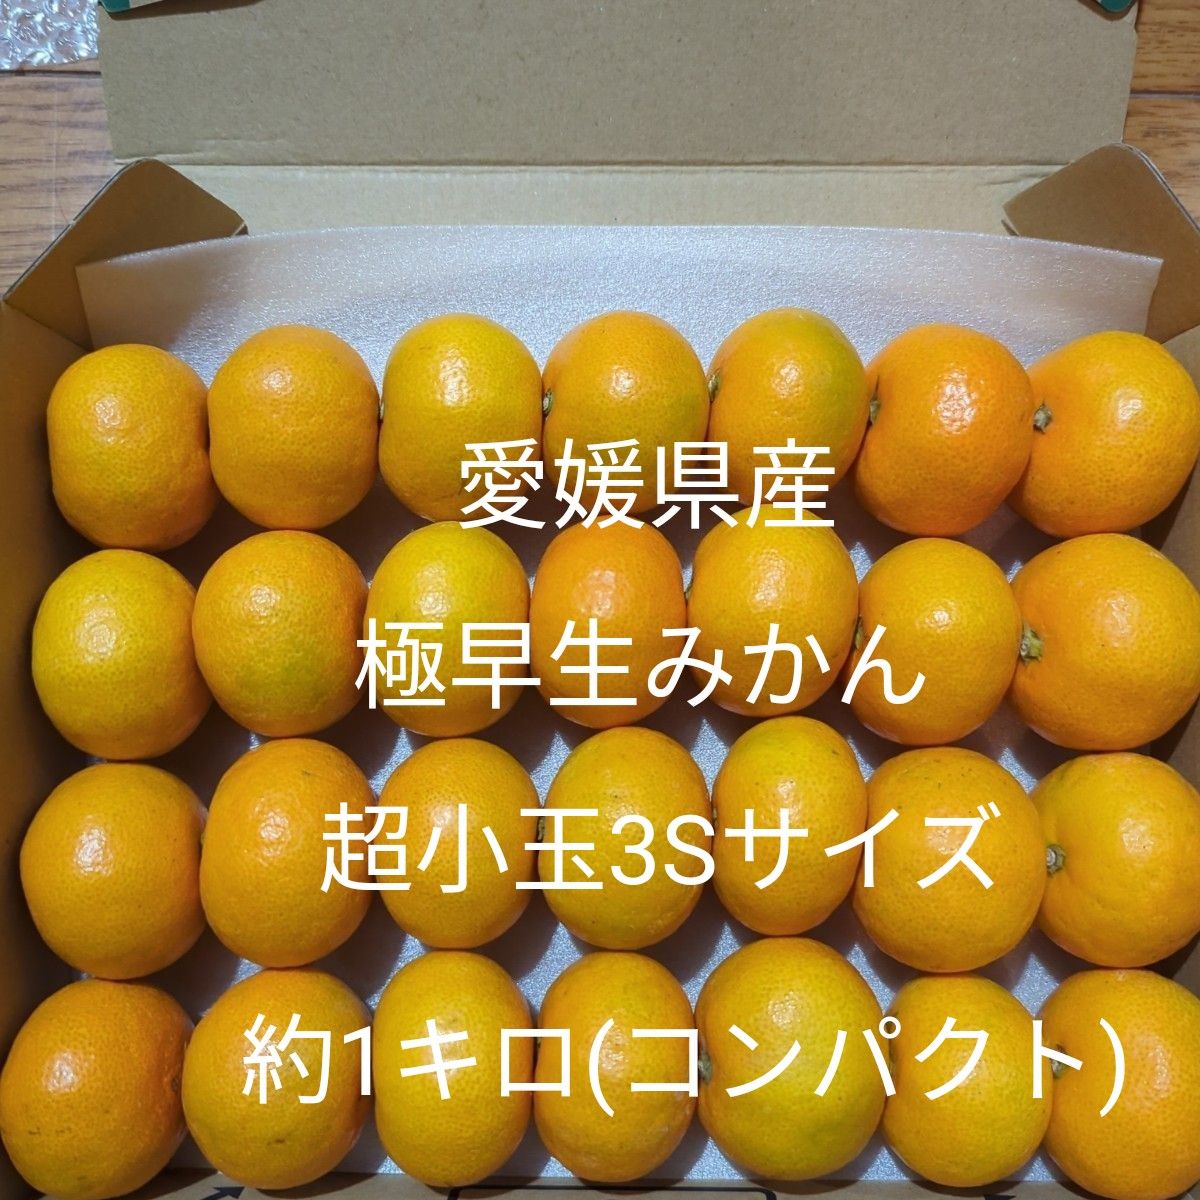 愛媛県産早生みかん超小玉3Sサイズ - 果物